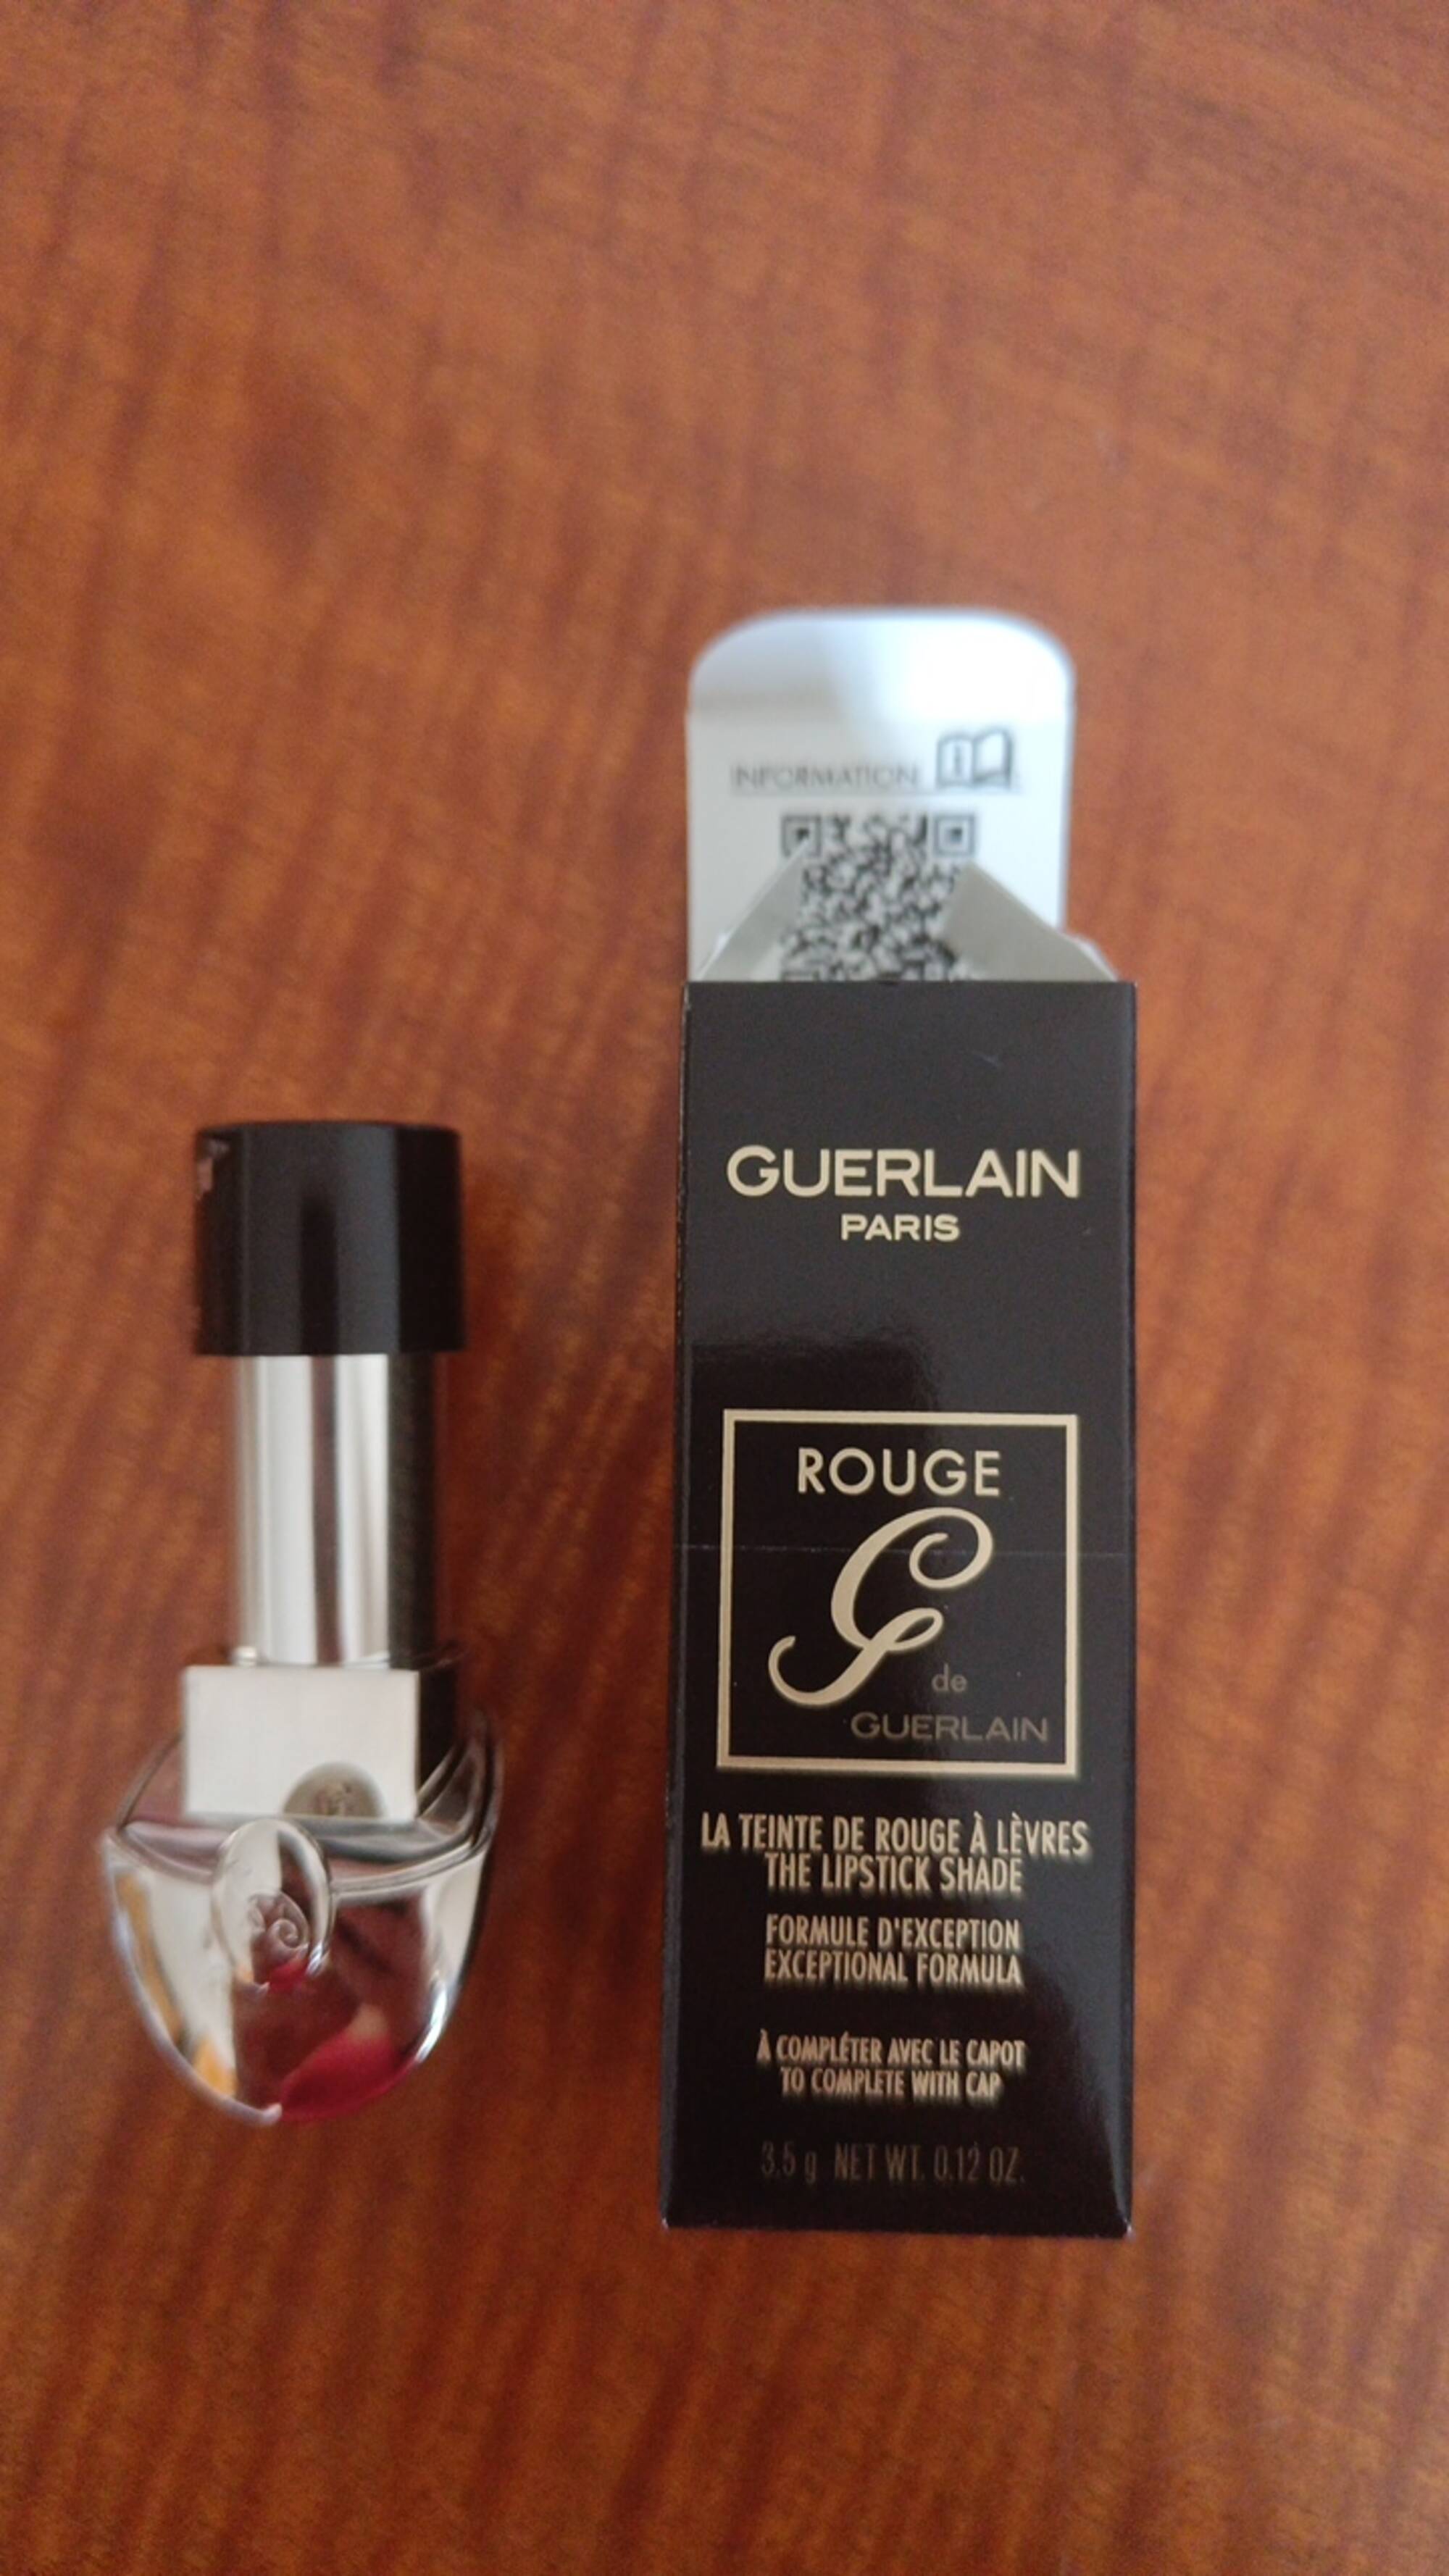 GUERLAIN - Rouge de Guerlain - La teinte de rouge à lèvres